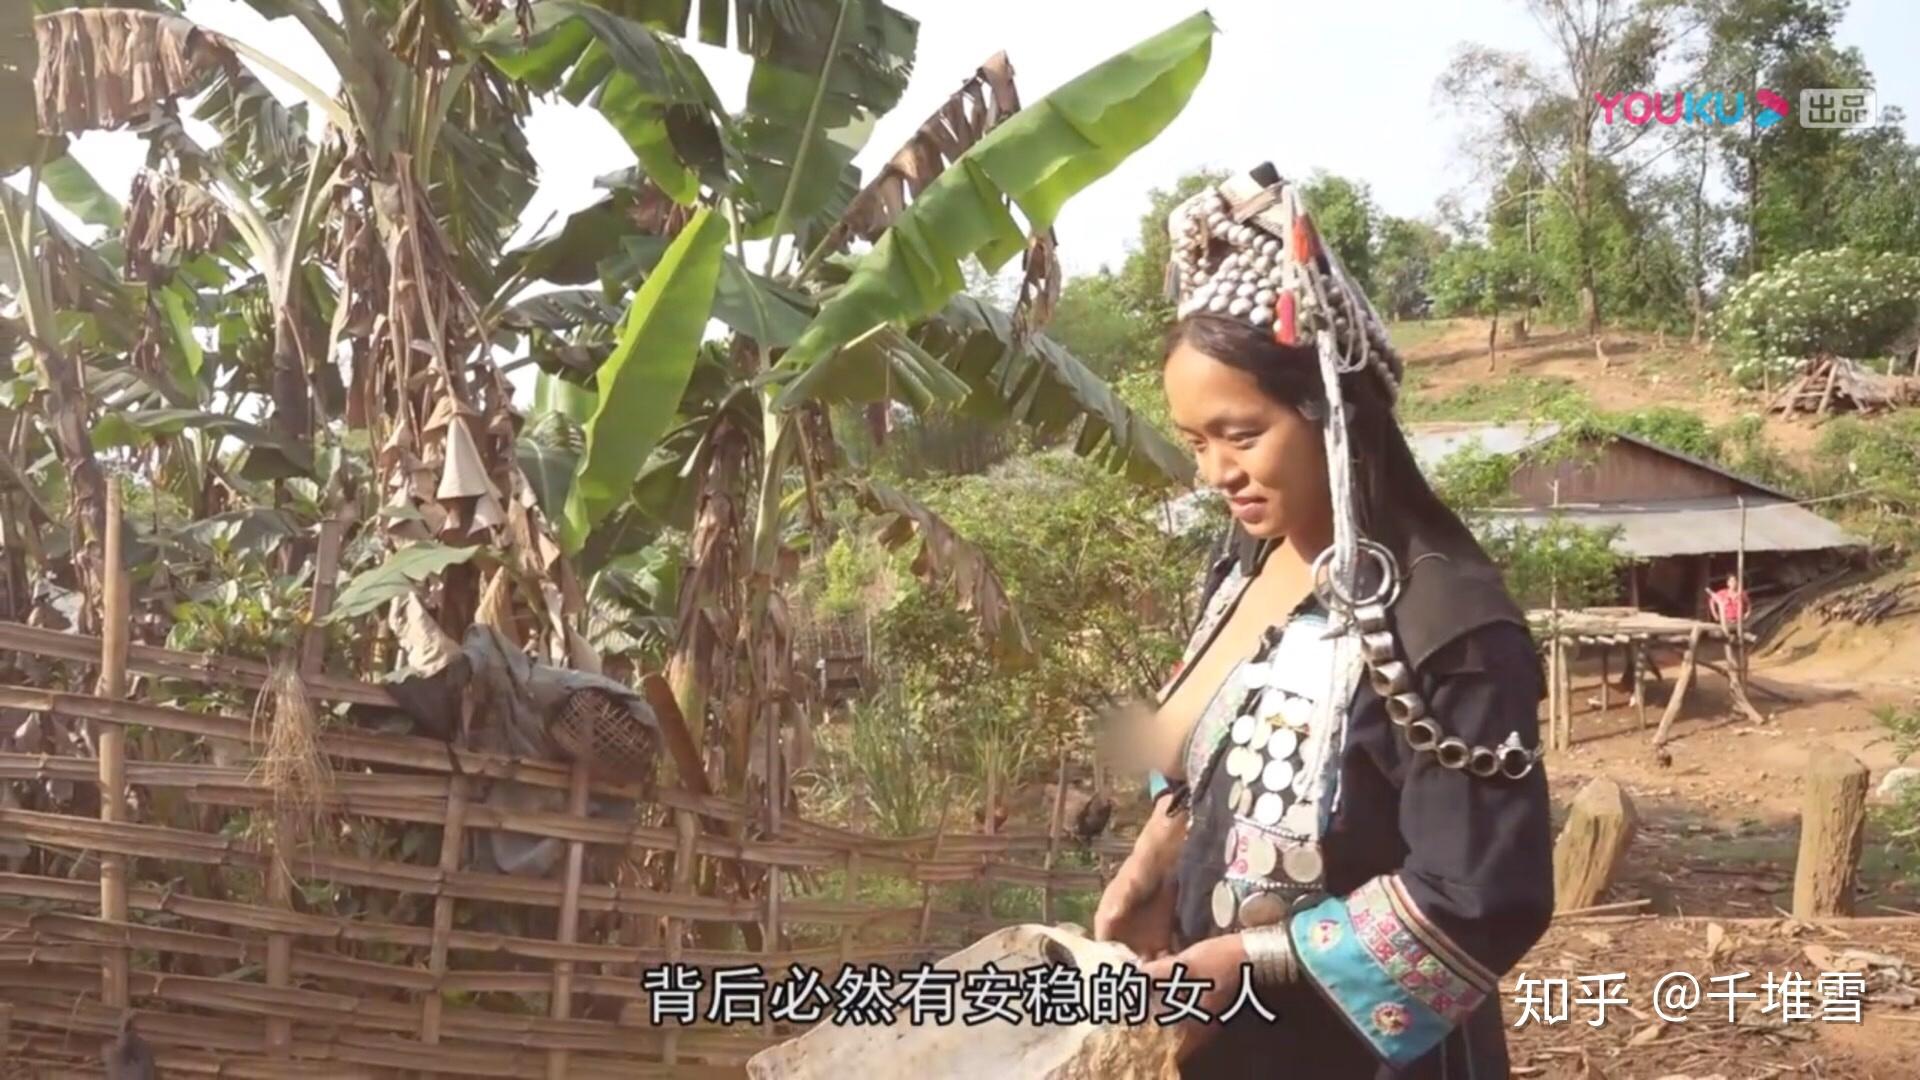 老挝阿卡族女人 分娩图片